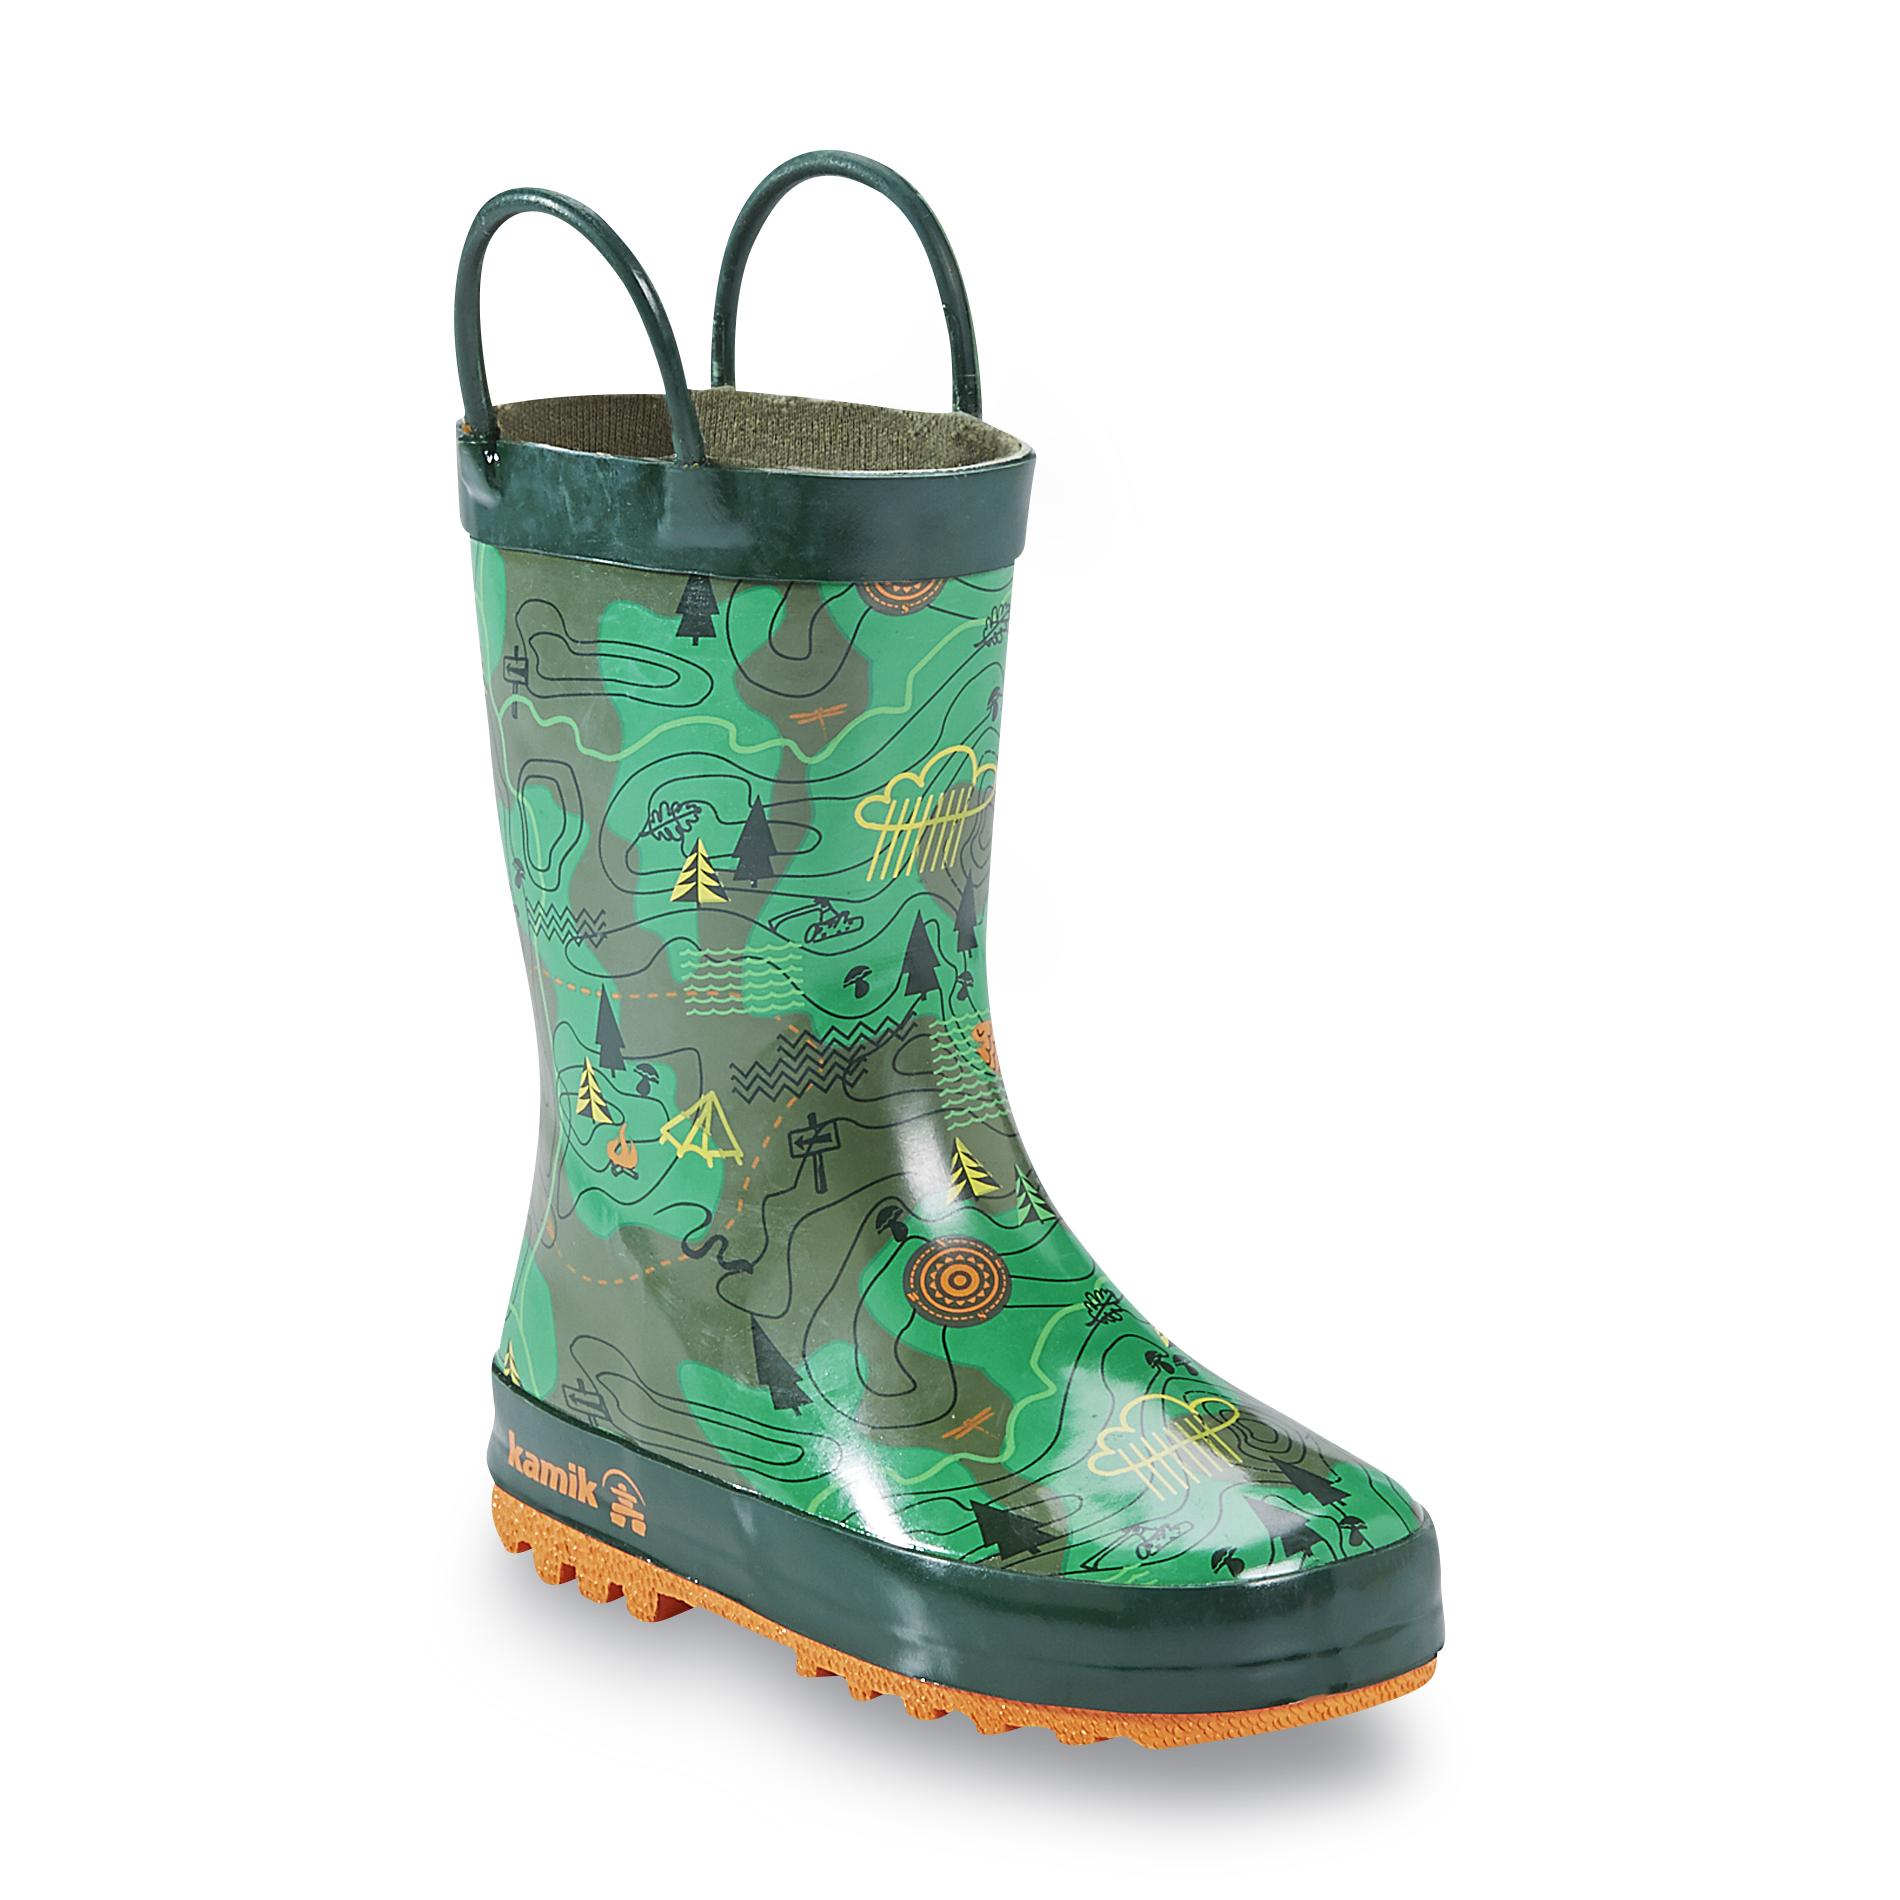 Kamik Boy's 7" Green/Orange Rubber Rain Boot - Explorer